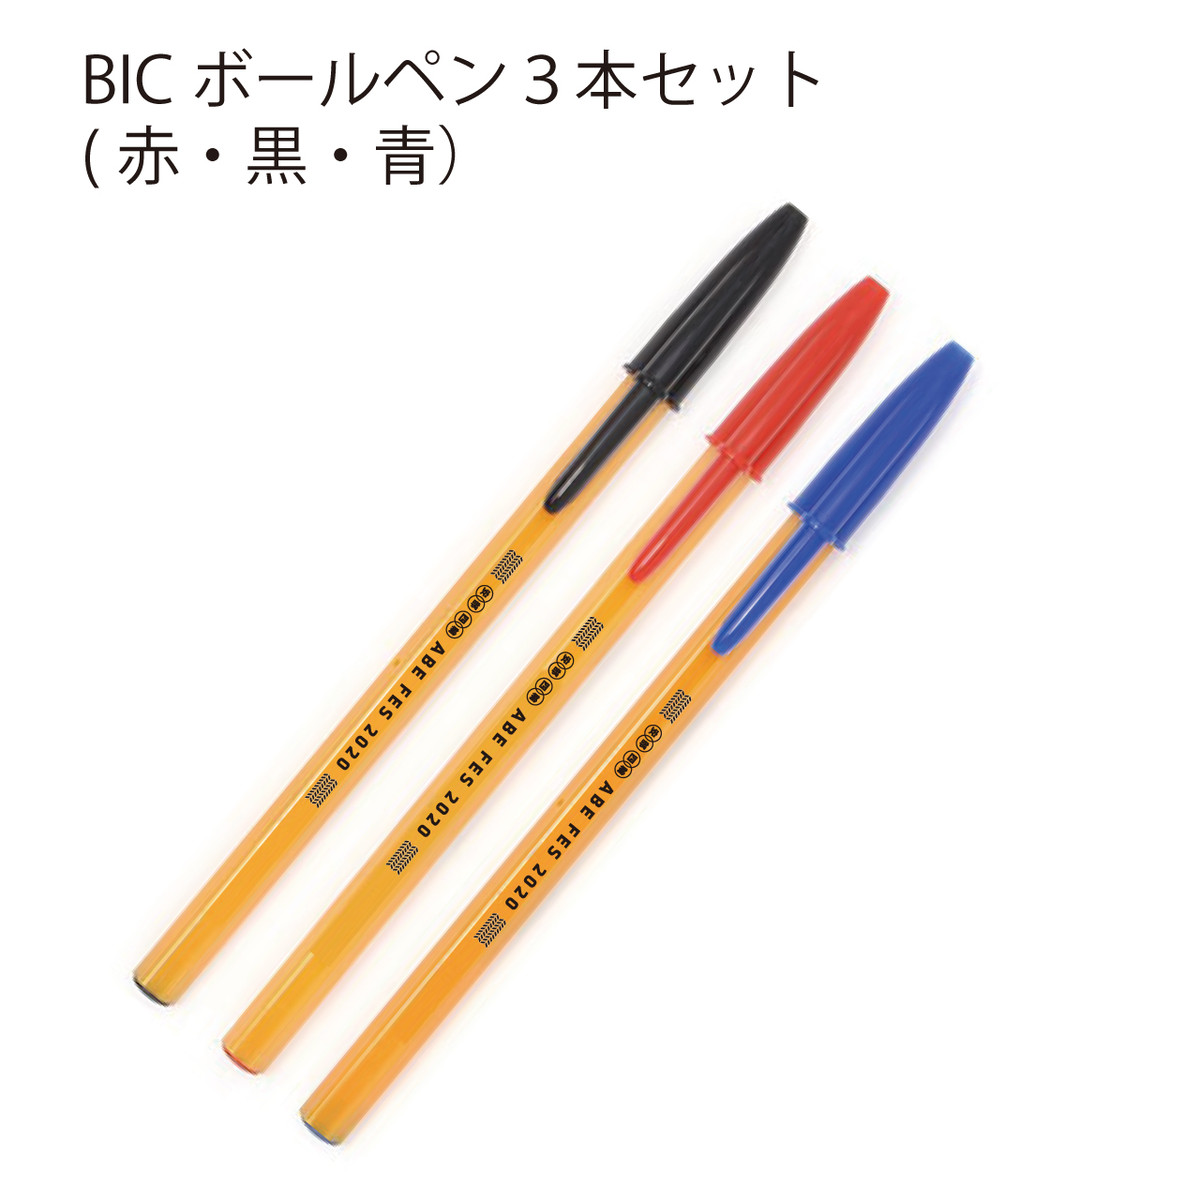 あ 安部礼司 Bicボールペン3色セット Tokyo Fm公式ショッピングサイト Shops Love